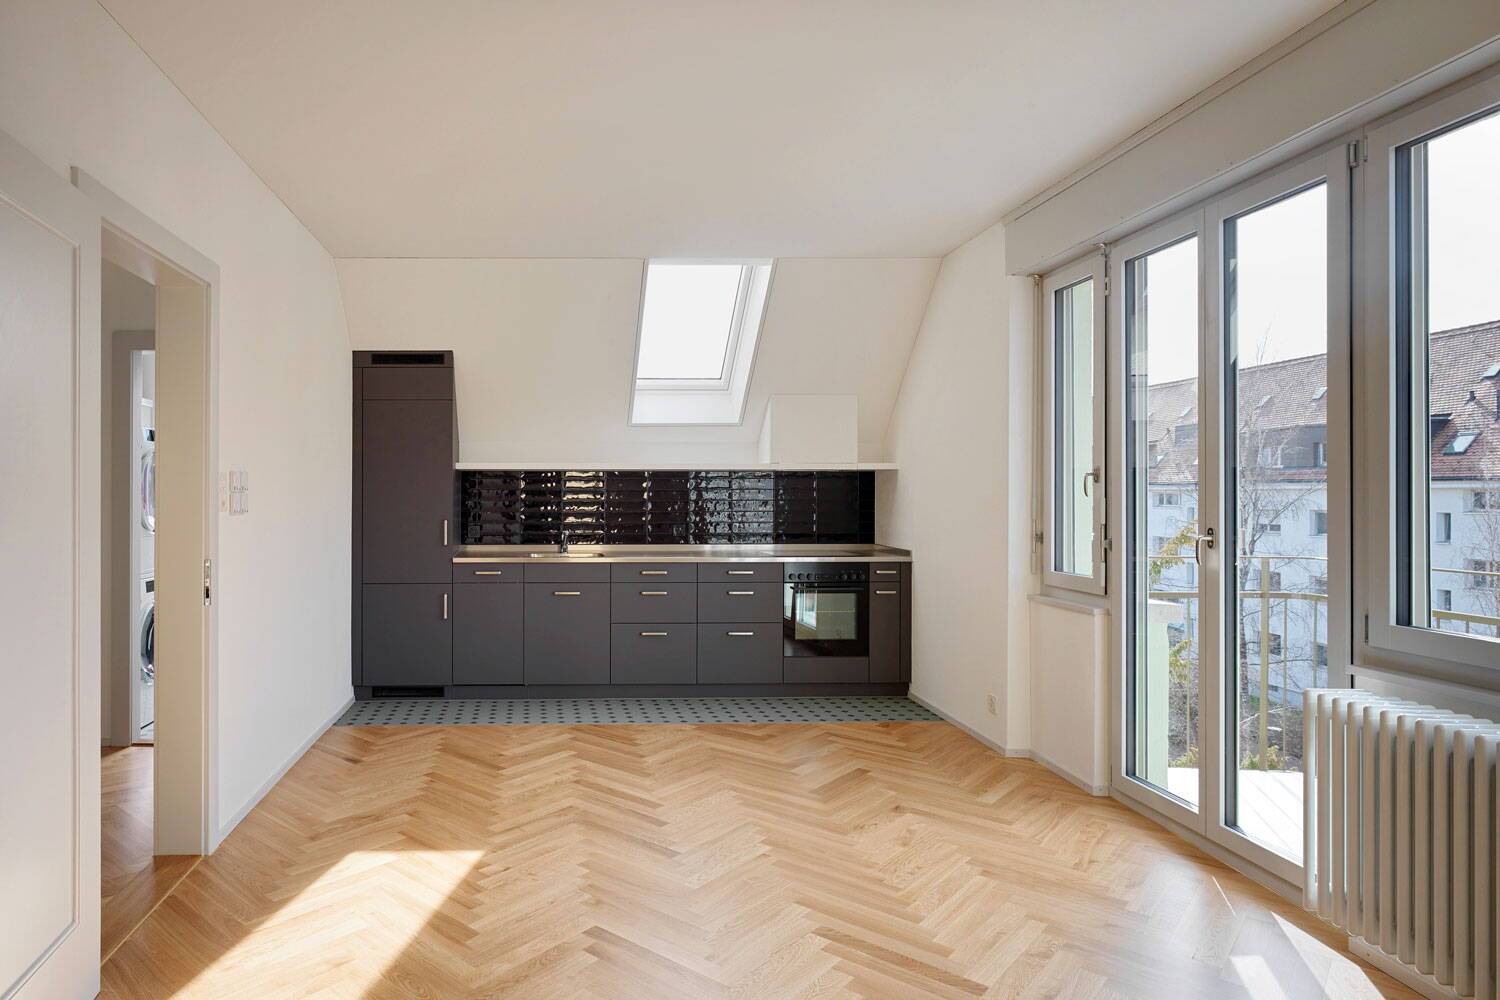 Mehrfamilienhaus, Milchbuck Zürich, frontaler Blick auf offene Wohnküche